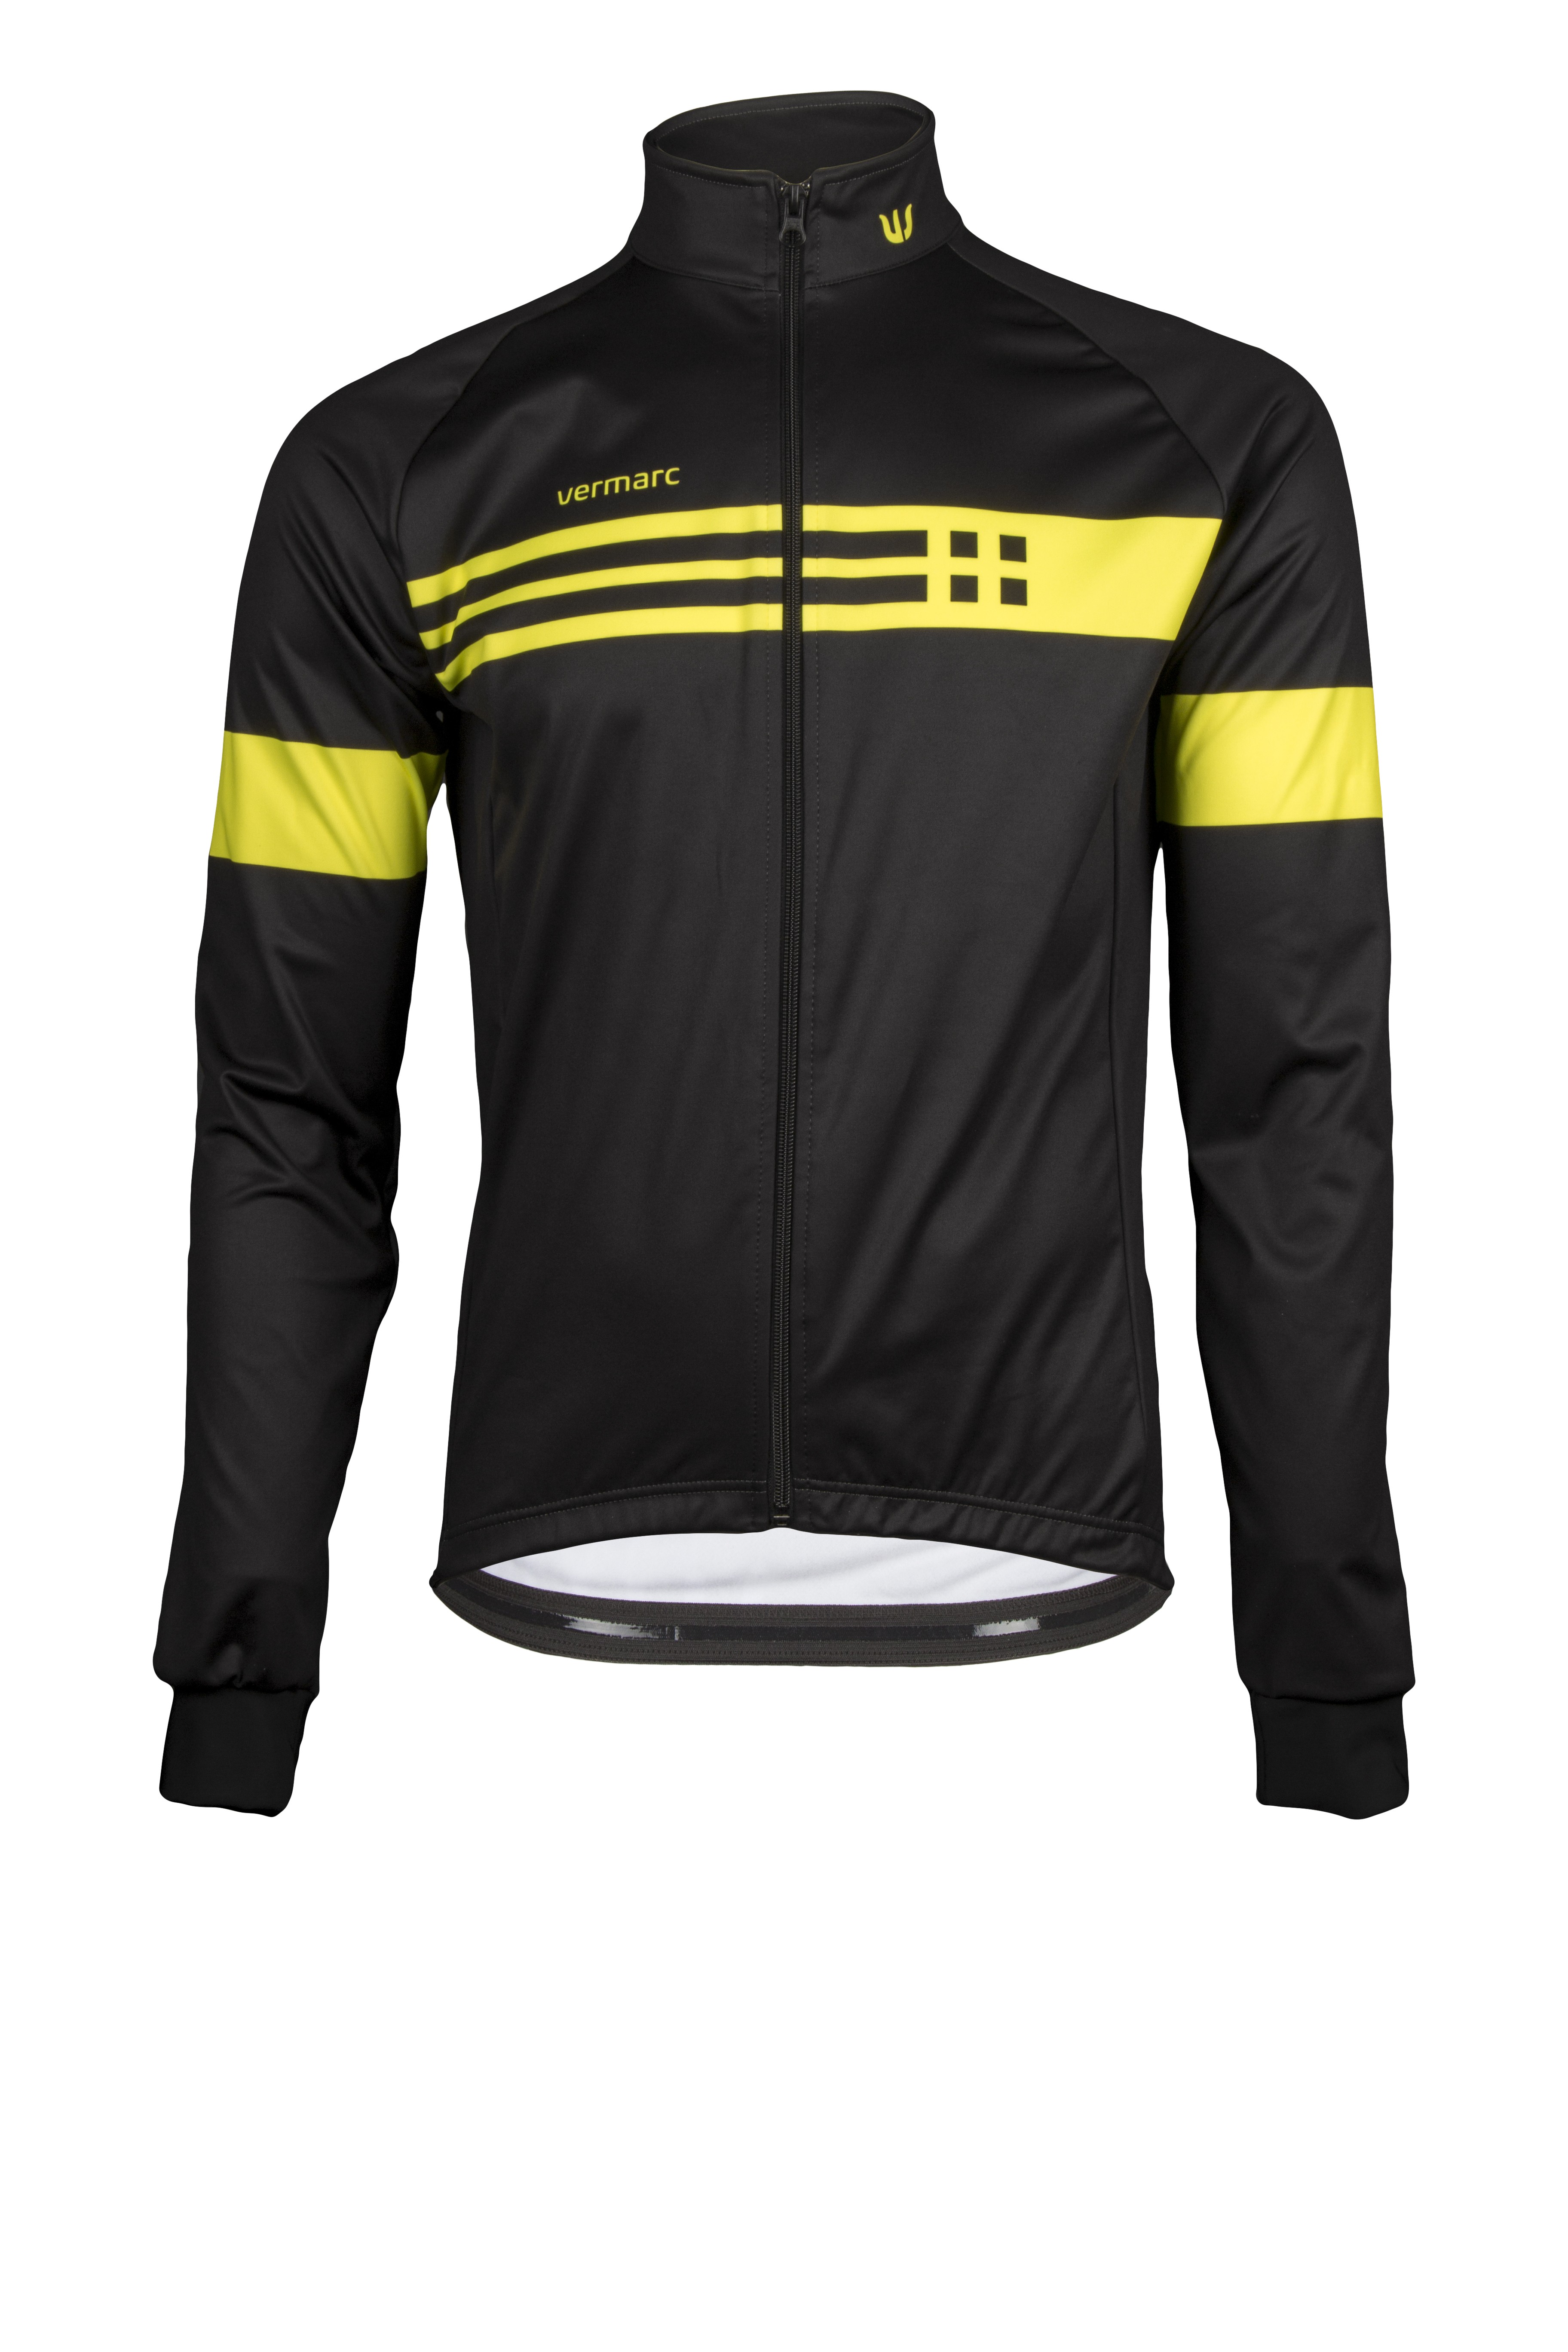 Vermarc squadra mid season veste de cyclisme noir jaune fluorescent